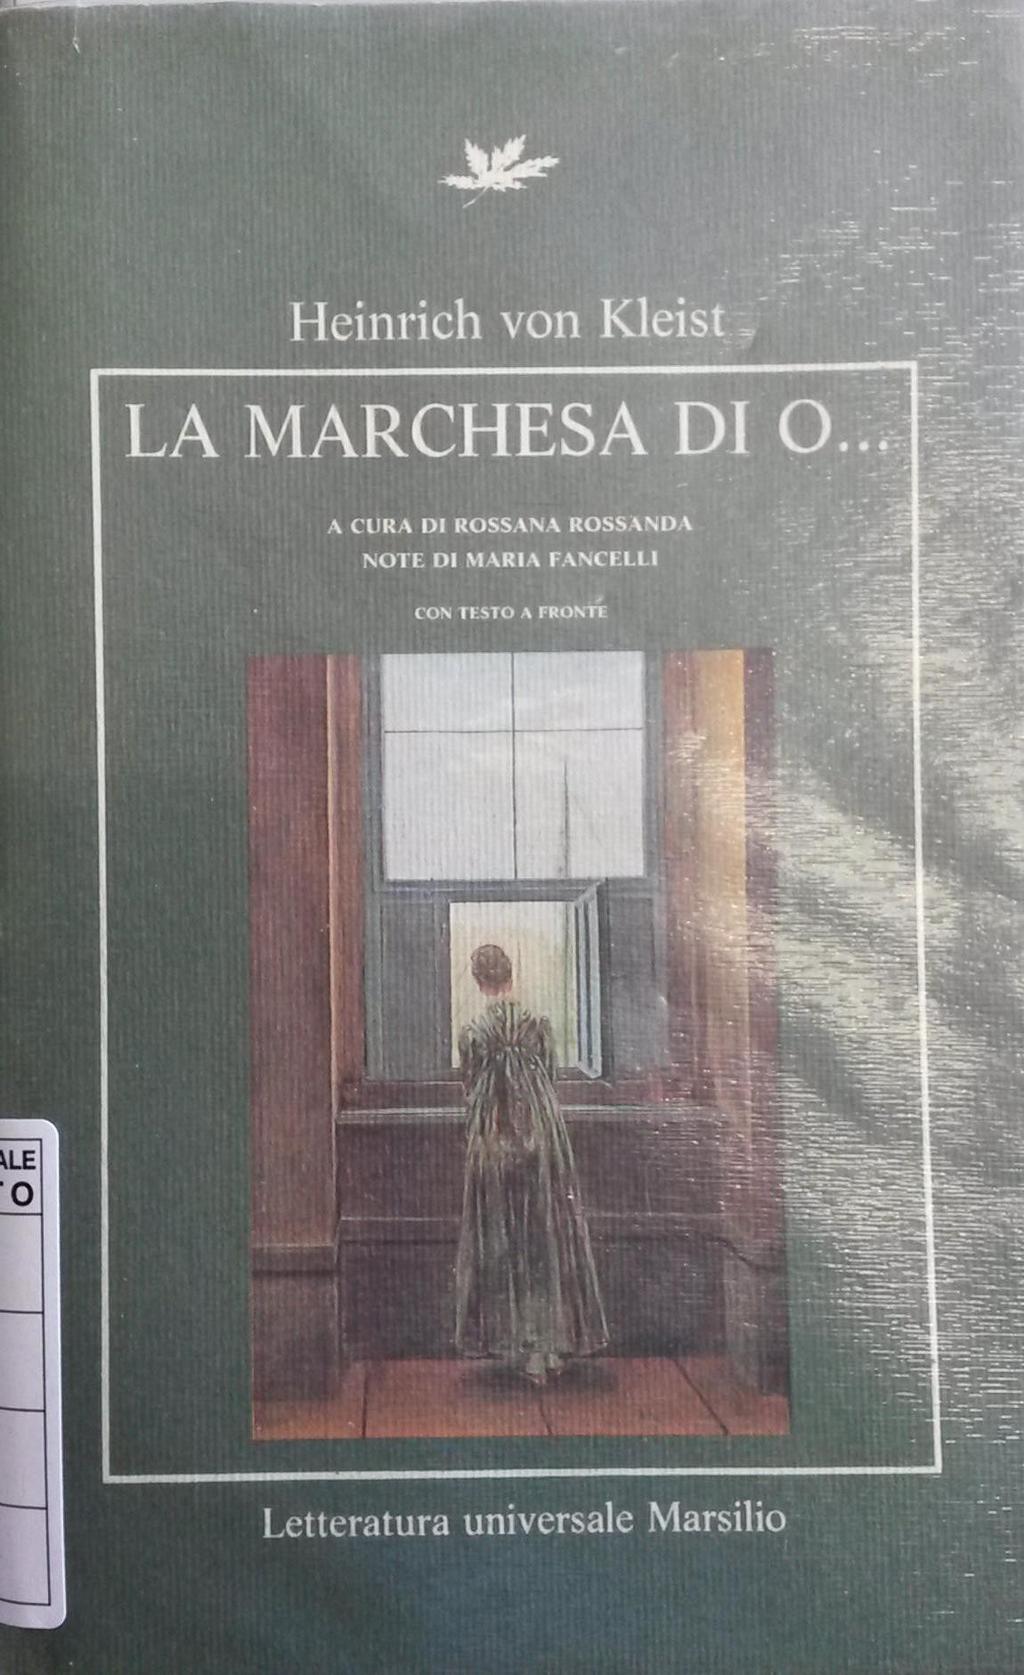 6 KLE MAR Tretrecinque / Ivano Fossati FOSSATI, IVANO Einaudi 2014; 416 p.